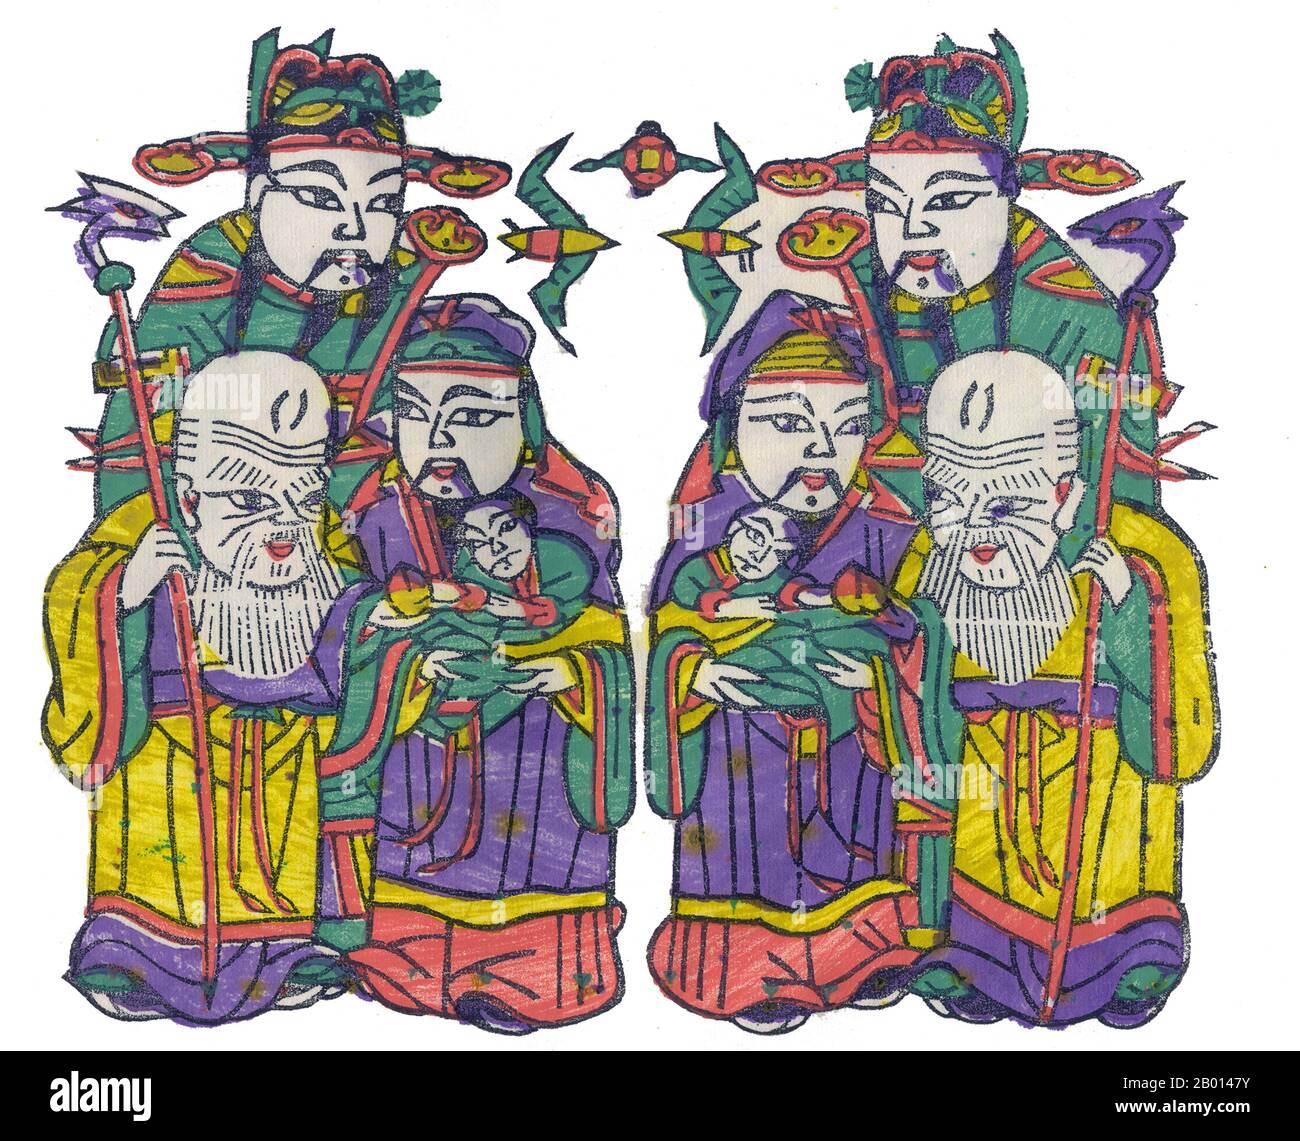 China: Die taoistischen Götter des guten Glücks (Fu), des Wohlstands (Lu) und der Langlebigkeit (Shou), zusammengefasst als Fulushou oder die Sanxing bezeichnet. Holzschnitt Malerei, c. 20. Jahrhundert. Der Begriff Fu Lu Shou oder Fulushou bezieht sich zusammen auf das Konzept von Glück (Fu), Wohlstand (Lu) und Langlebigkeit (Shou). Dieses taoistische Konzept geht auf die Ming-Dynastie zurück, als der Fu-Stern, der Lu-Stern und der Shou-Stern als personifizierte Gottheiten dieser Attribute angesehen wurden. Der Begriff wird in der chinesischen Kultur häufig verwendet, um die drei Attribute eines guten Lebens zu bezeichnen. Stockfoto